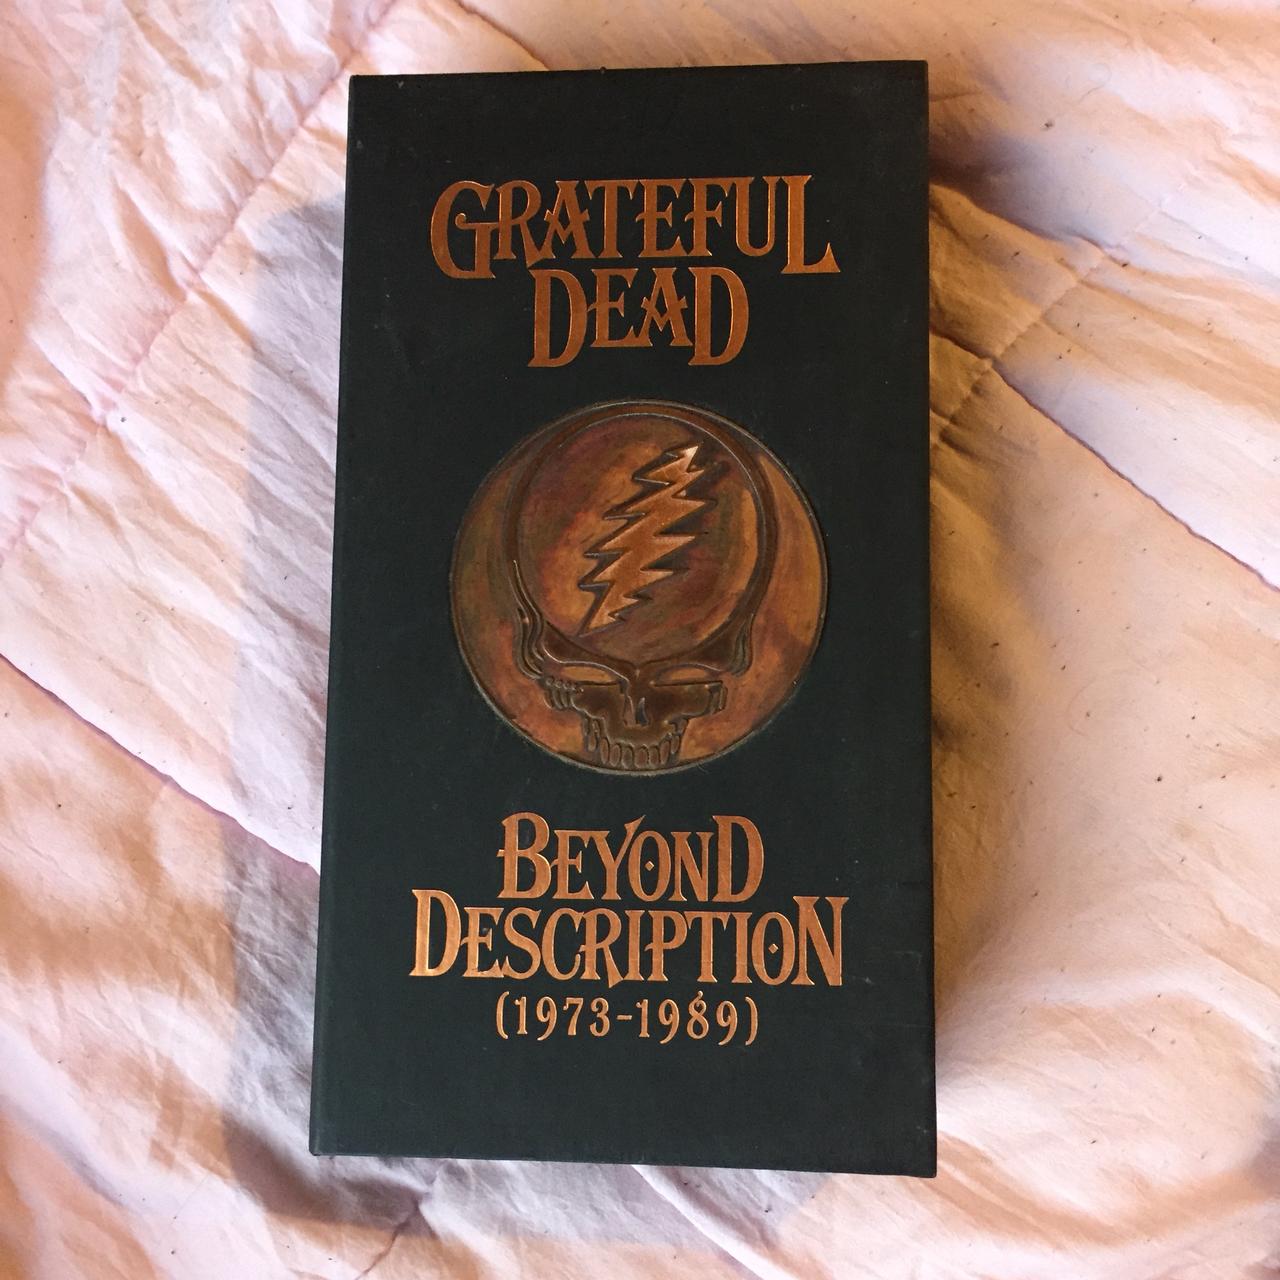 Grateful Dead Beyond Description 12 CD box set. Some...